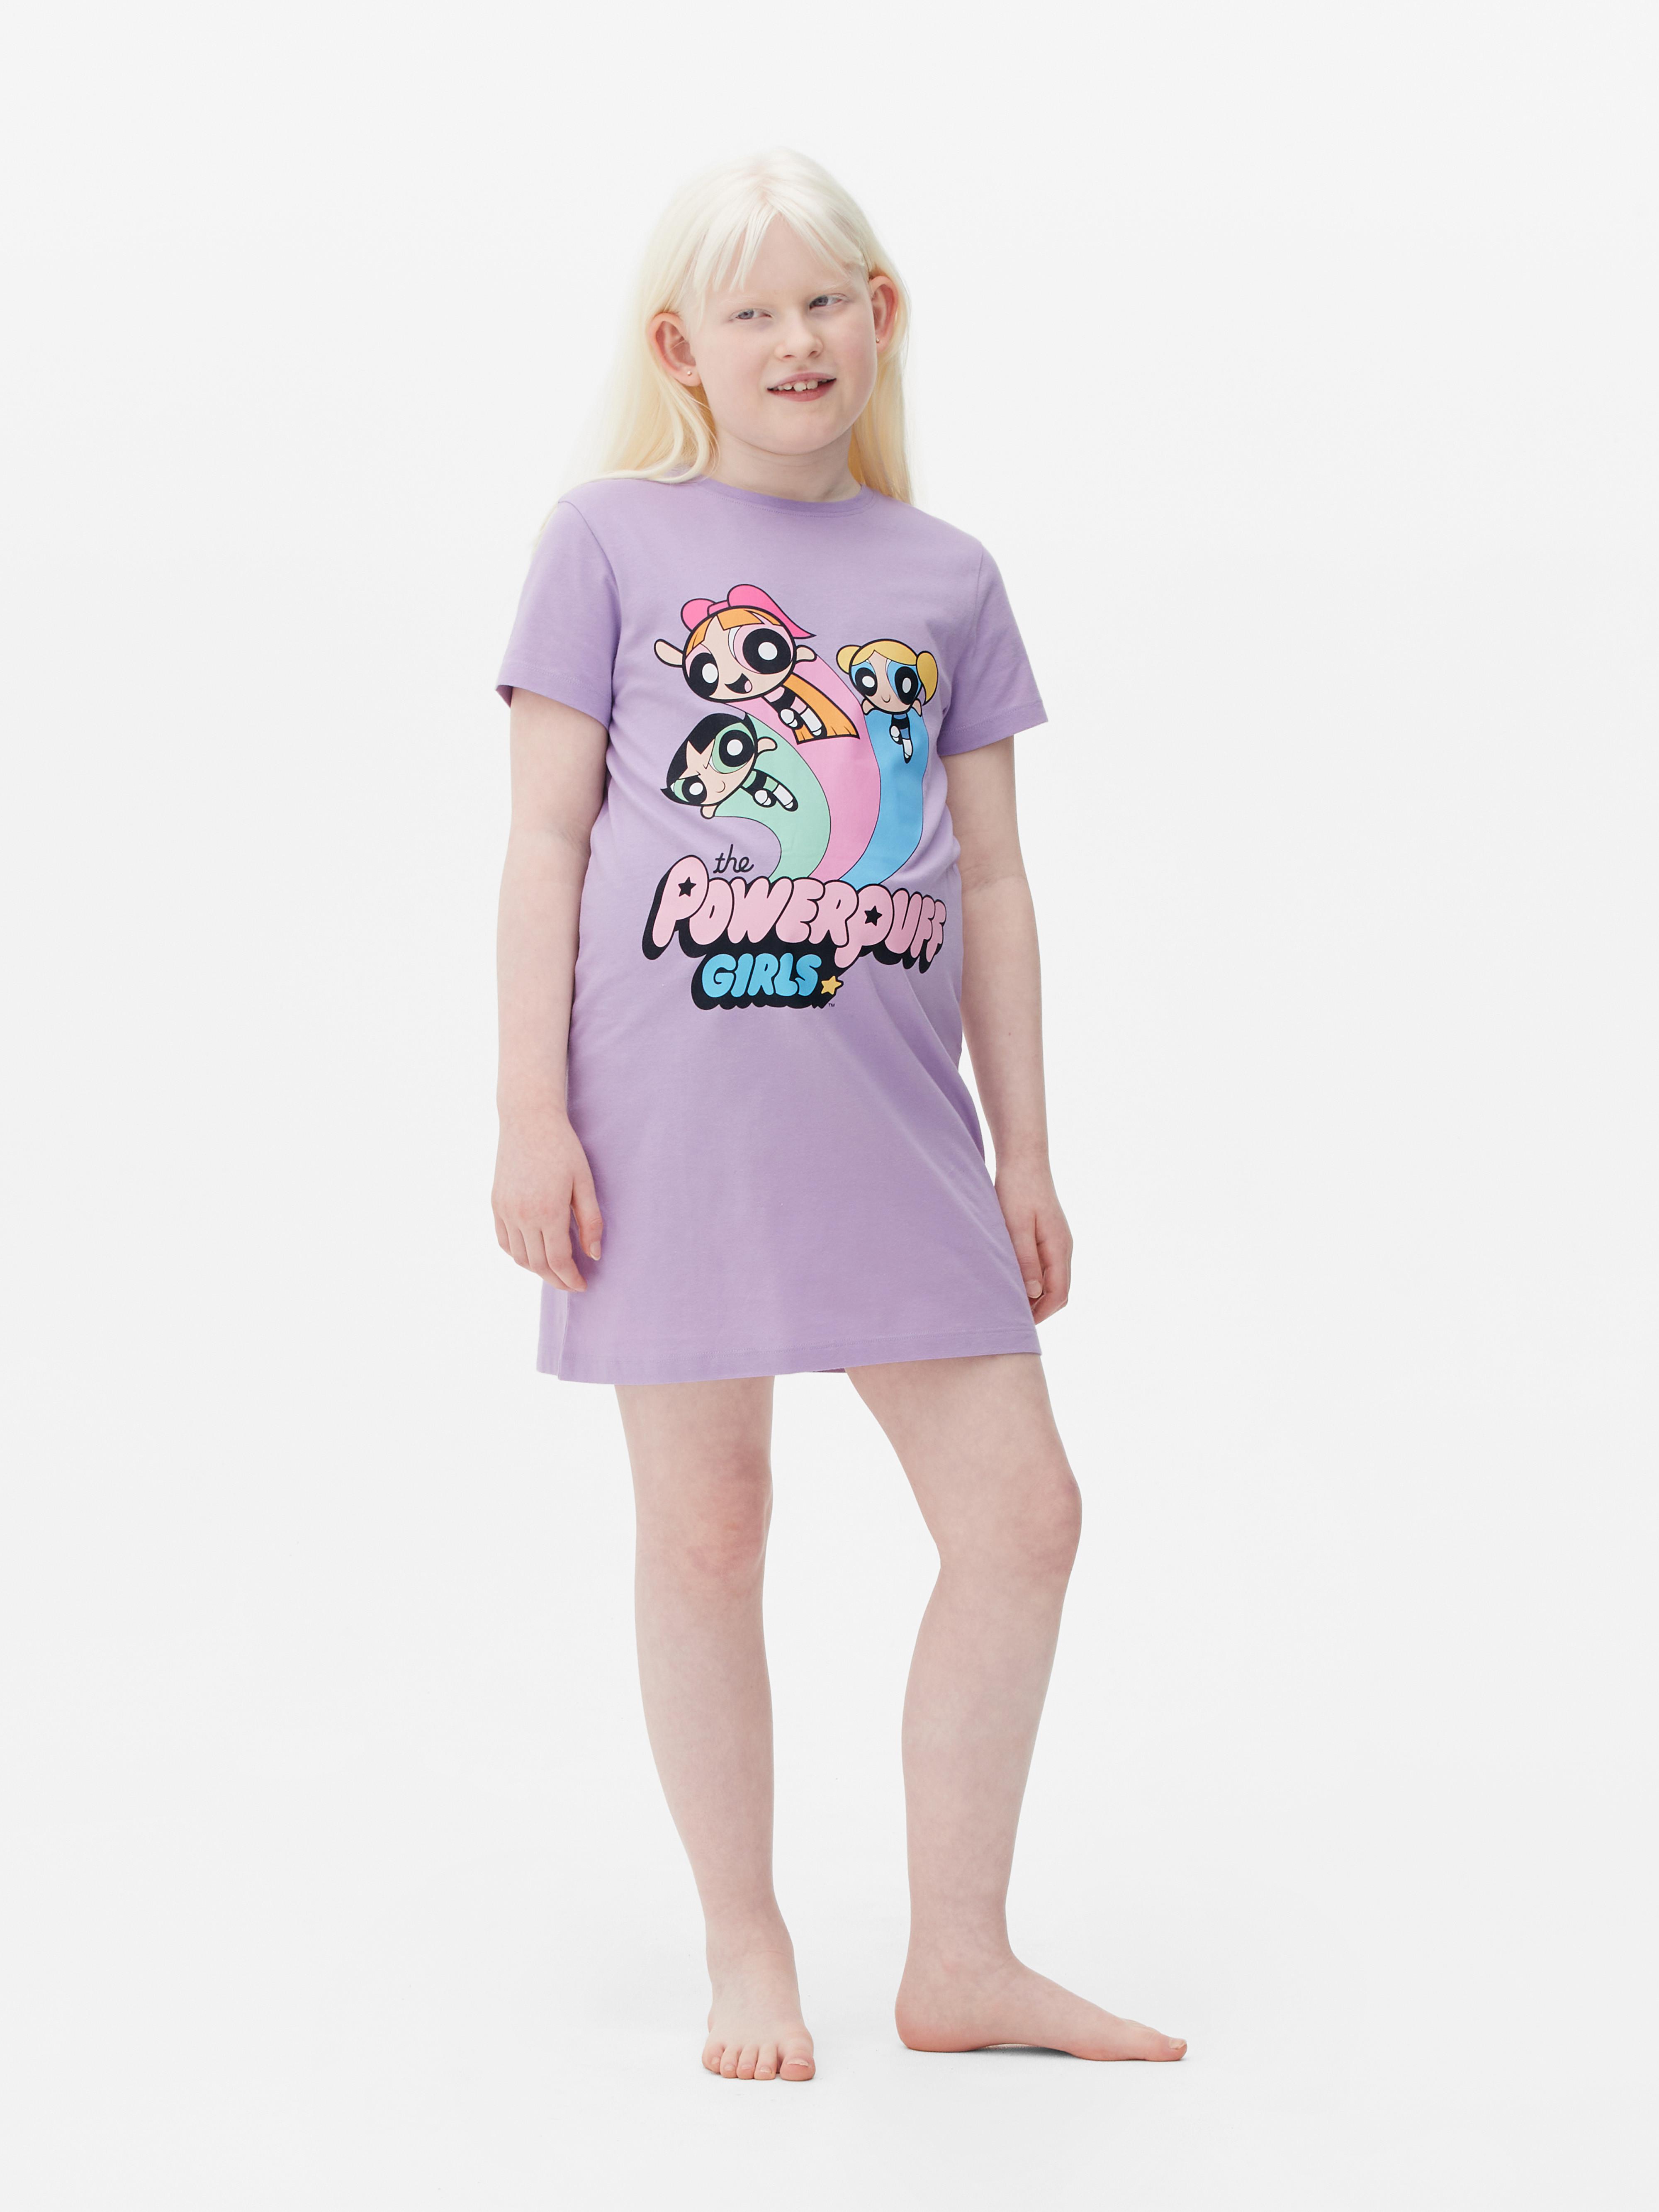 T-shirt dormir The Powerpuff Girls